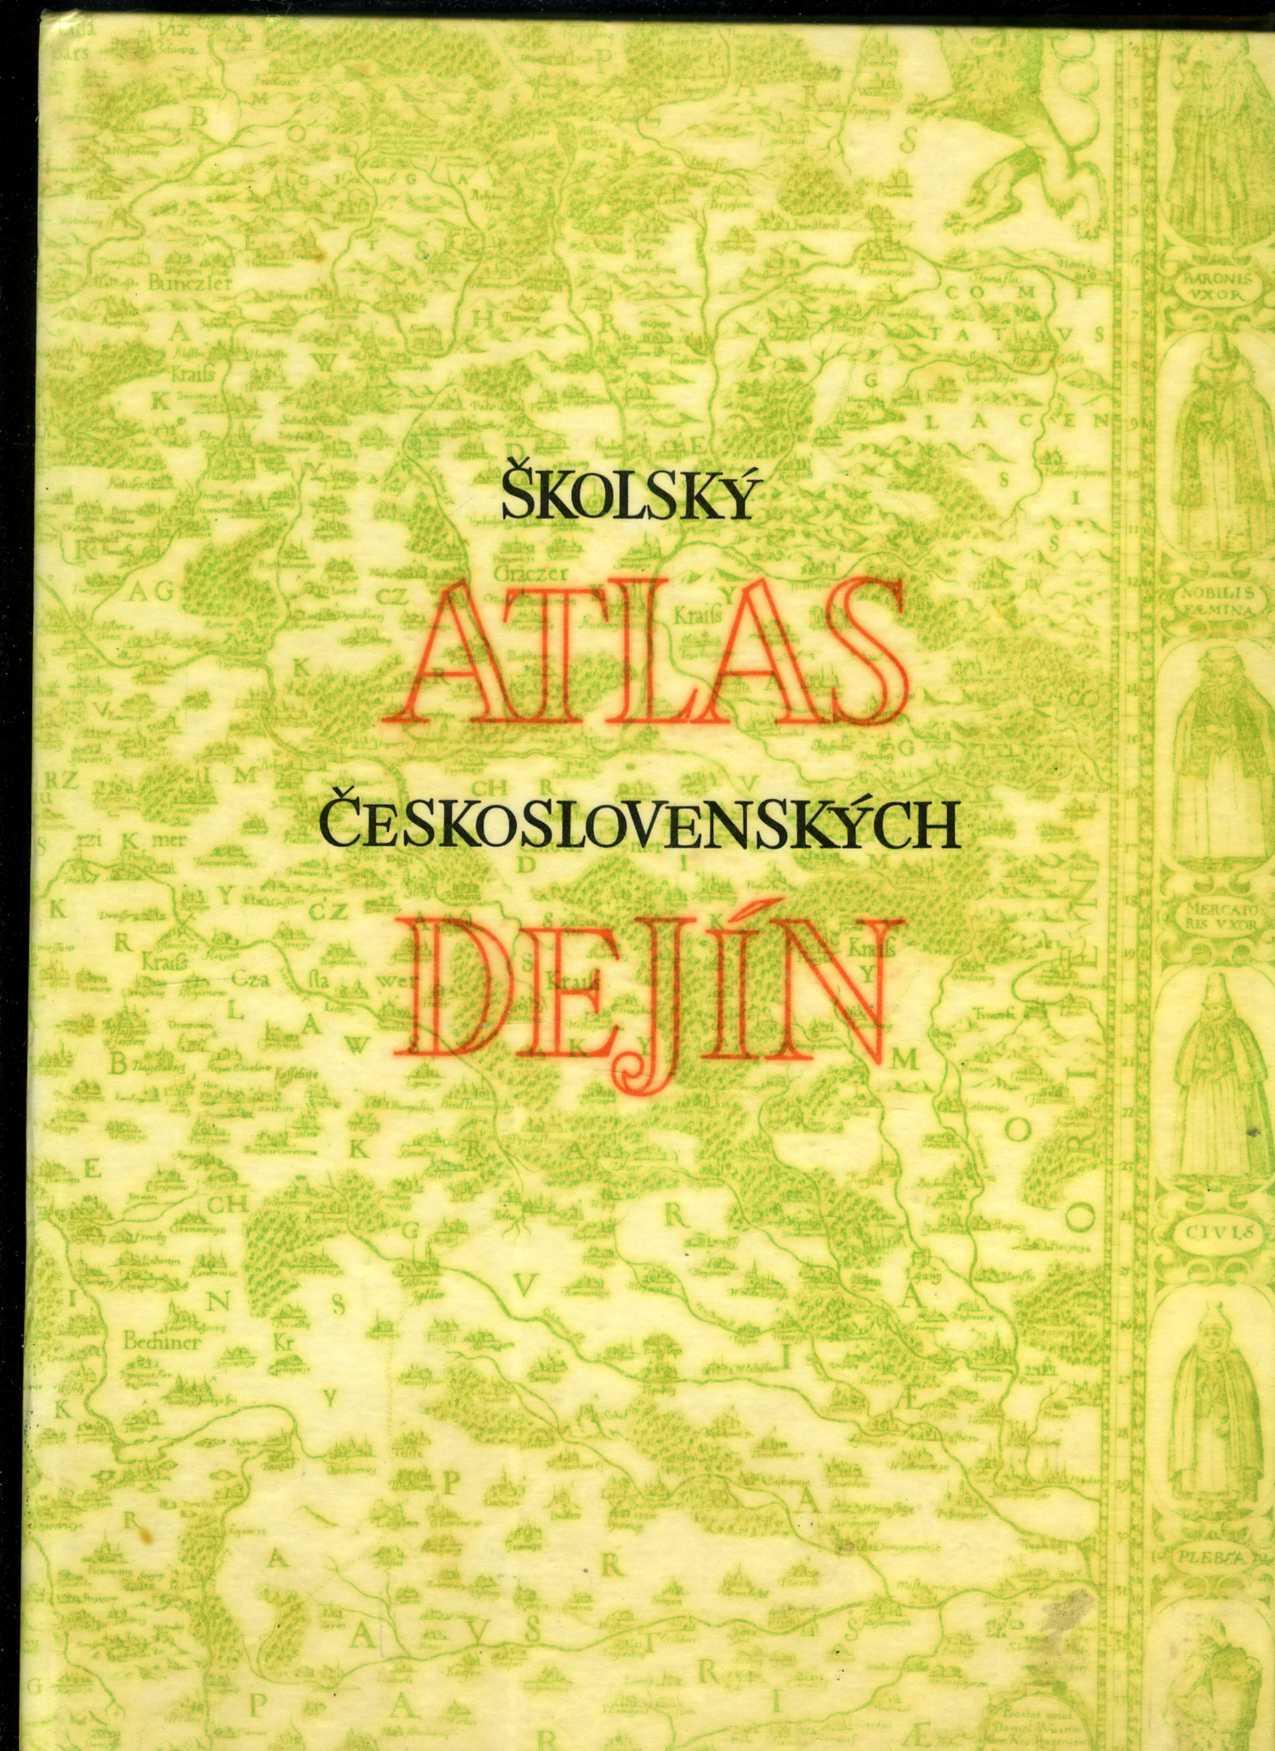 Školský atlas československých dejín